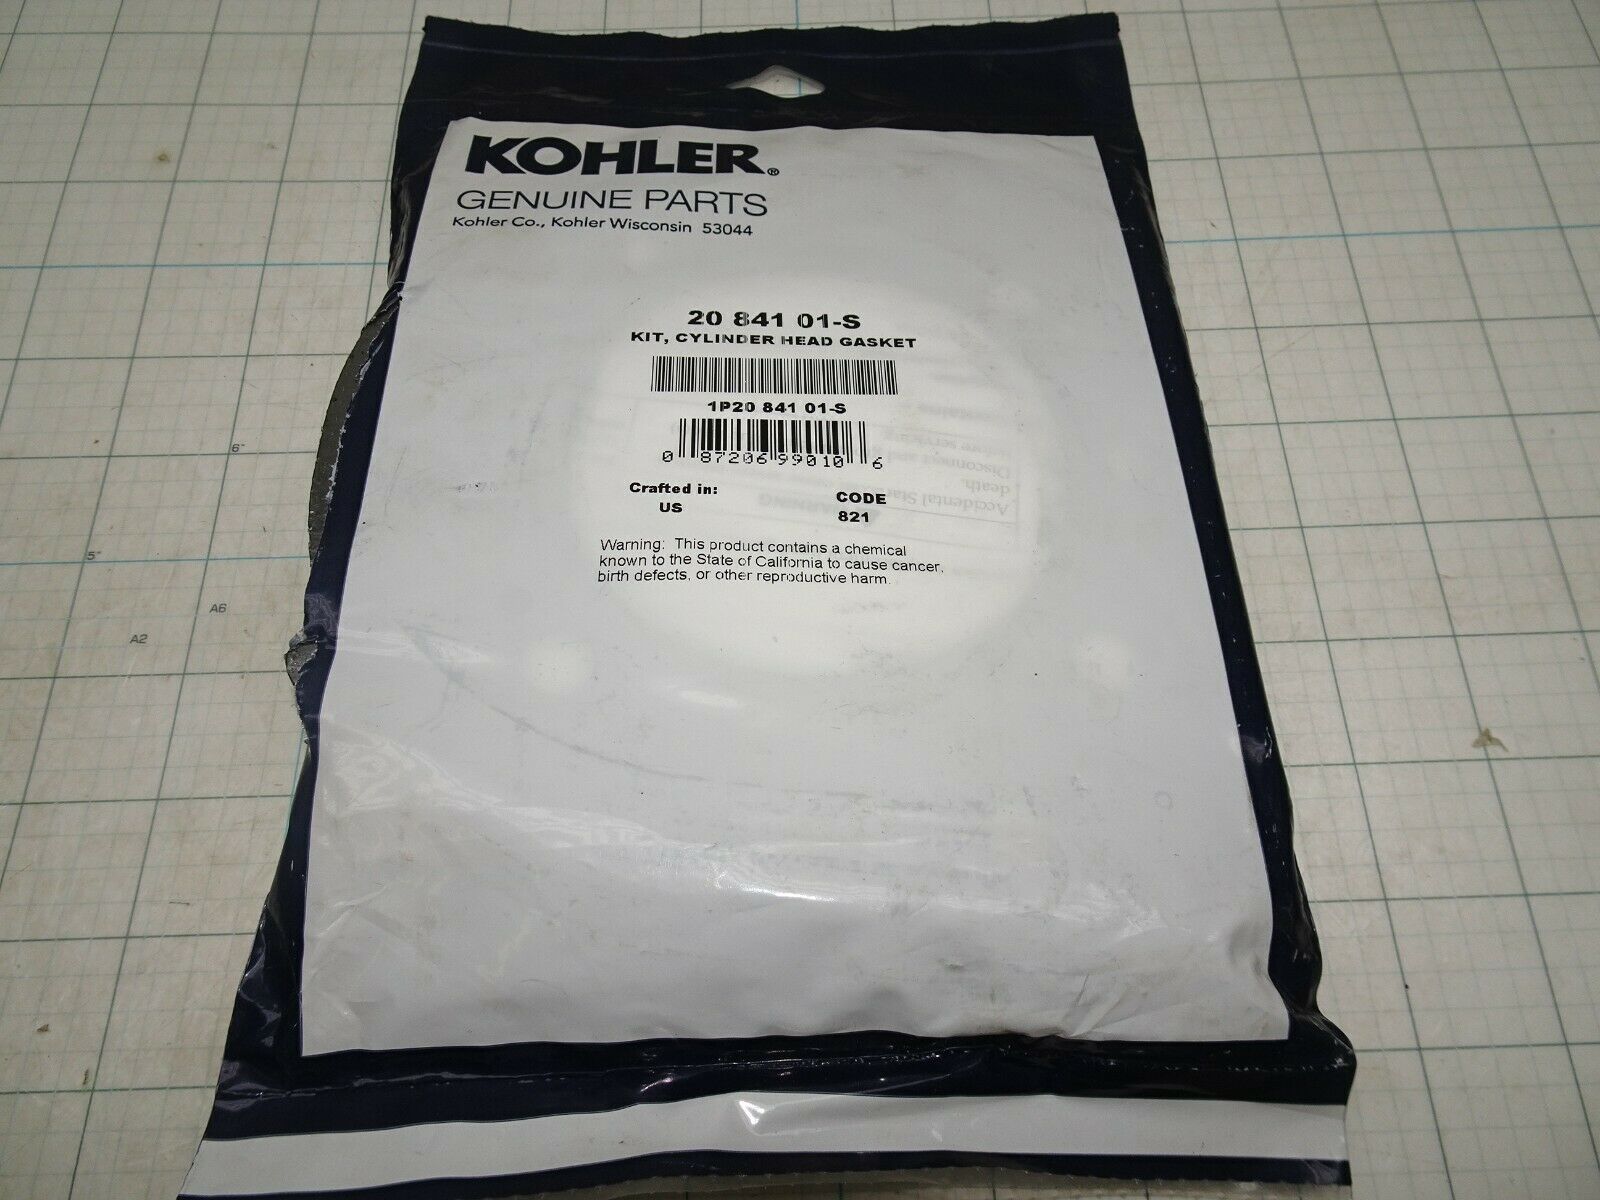 Primary image for Kohler 20 841 01-S Head Gasket Kit  OEM NOS